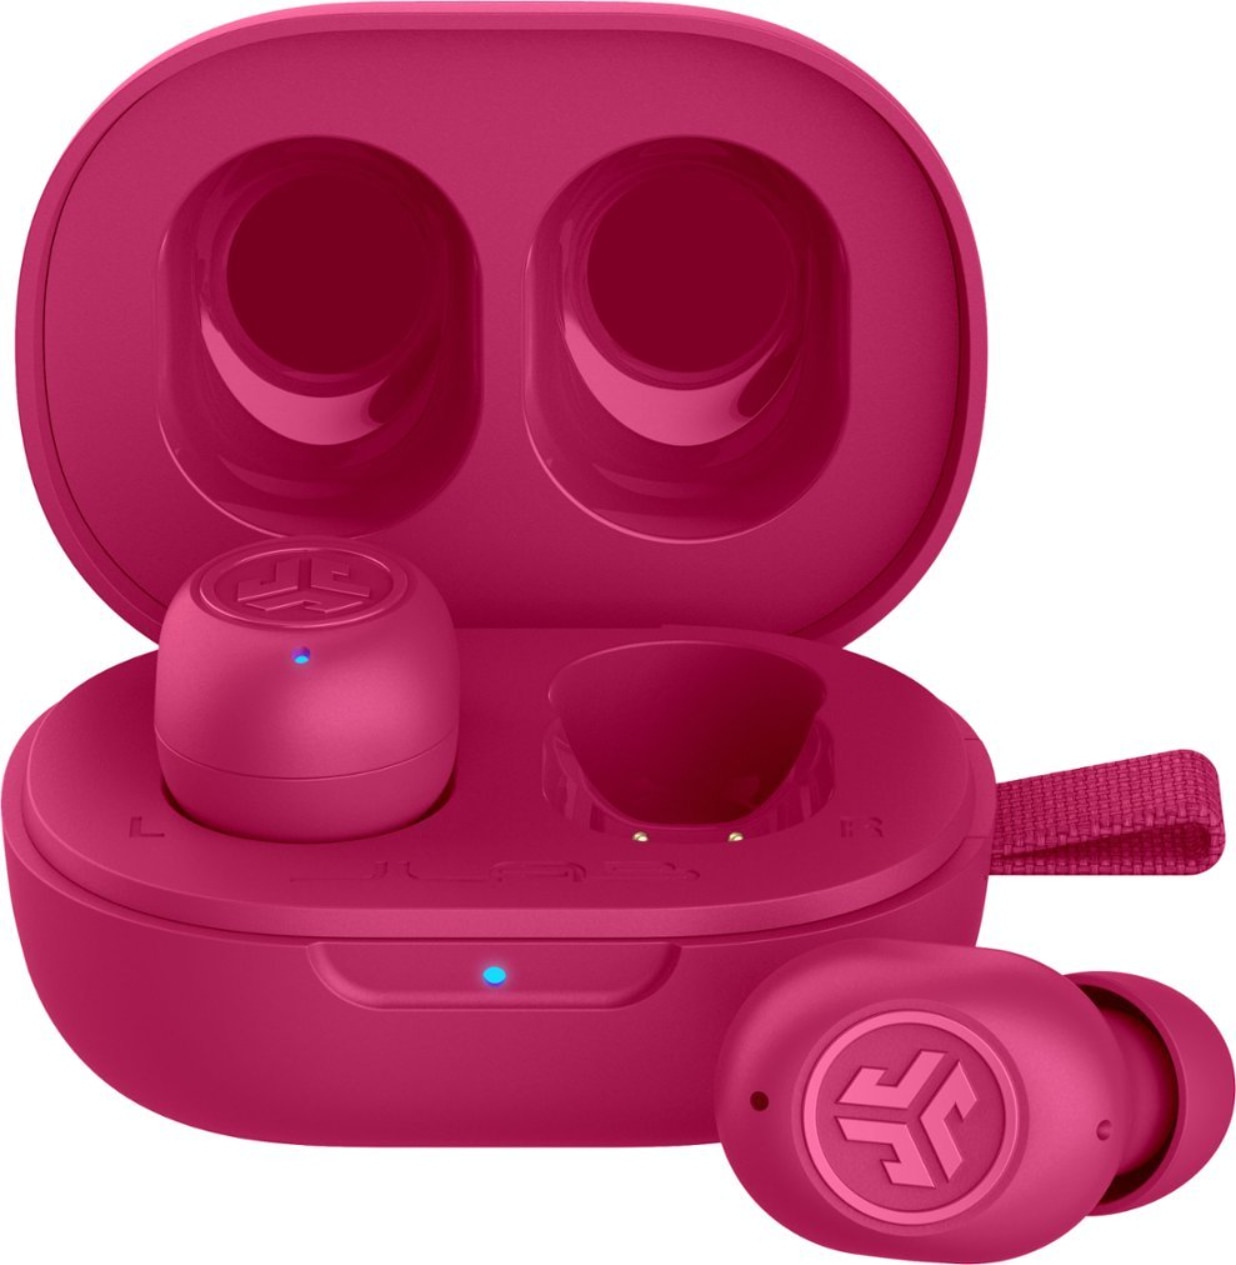 JLab JBuds Mini True Wireless Earbuds- Pink